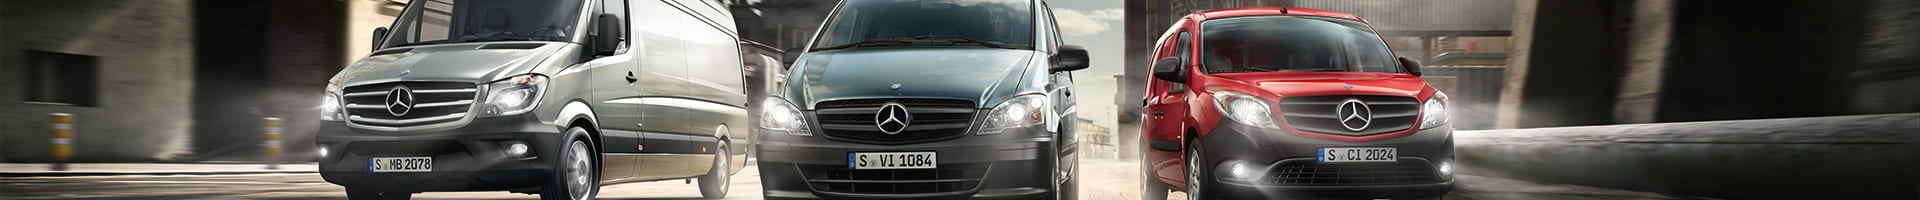 Onlineshop products Mercedes-Benz Vans